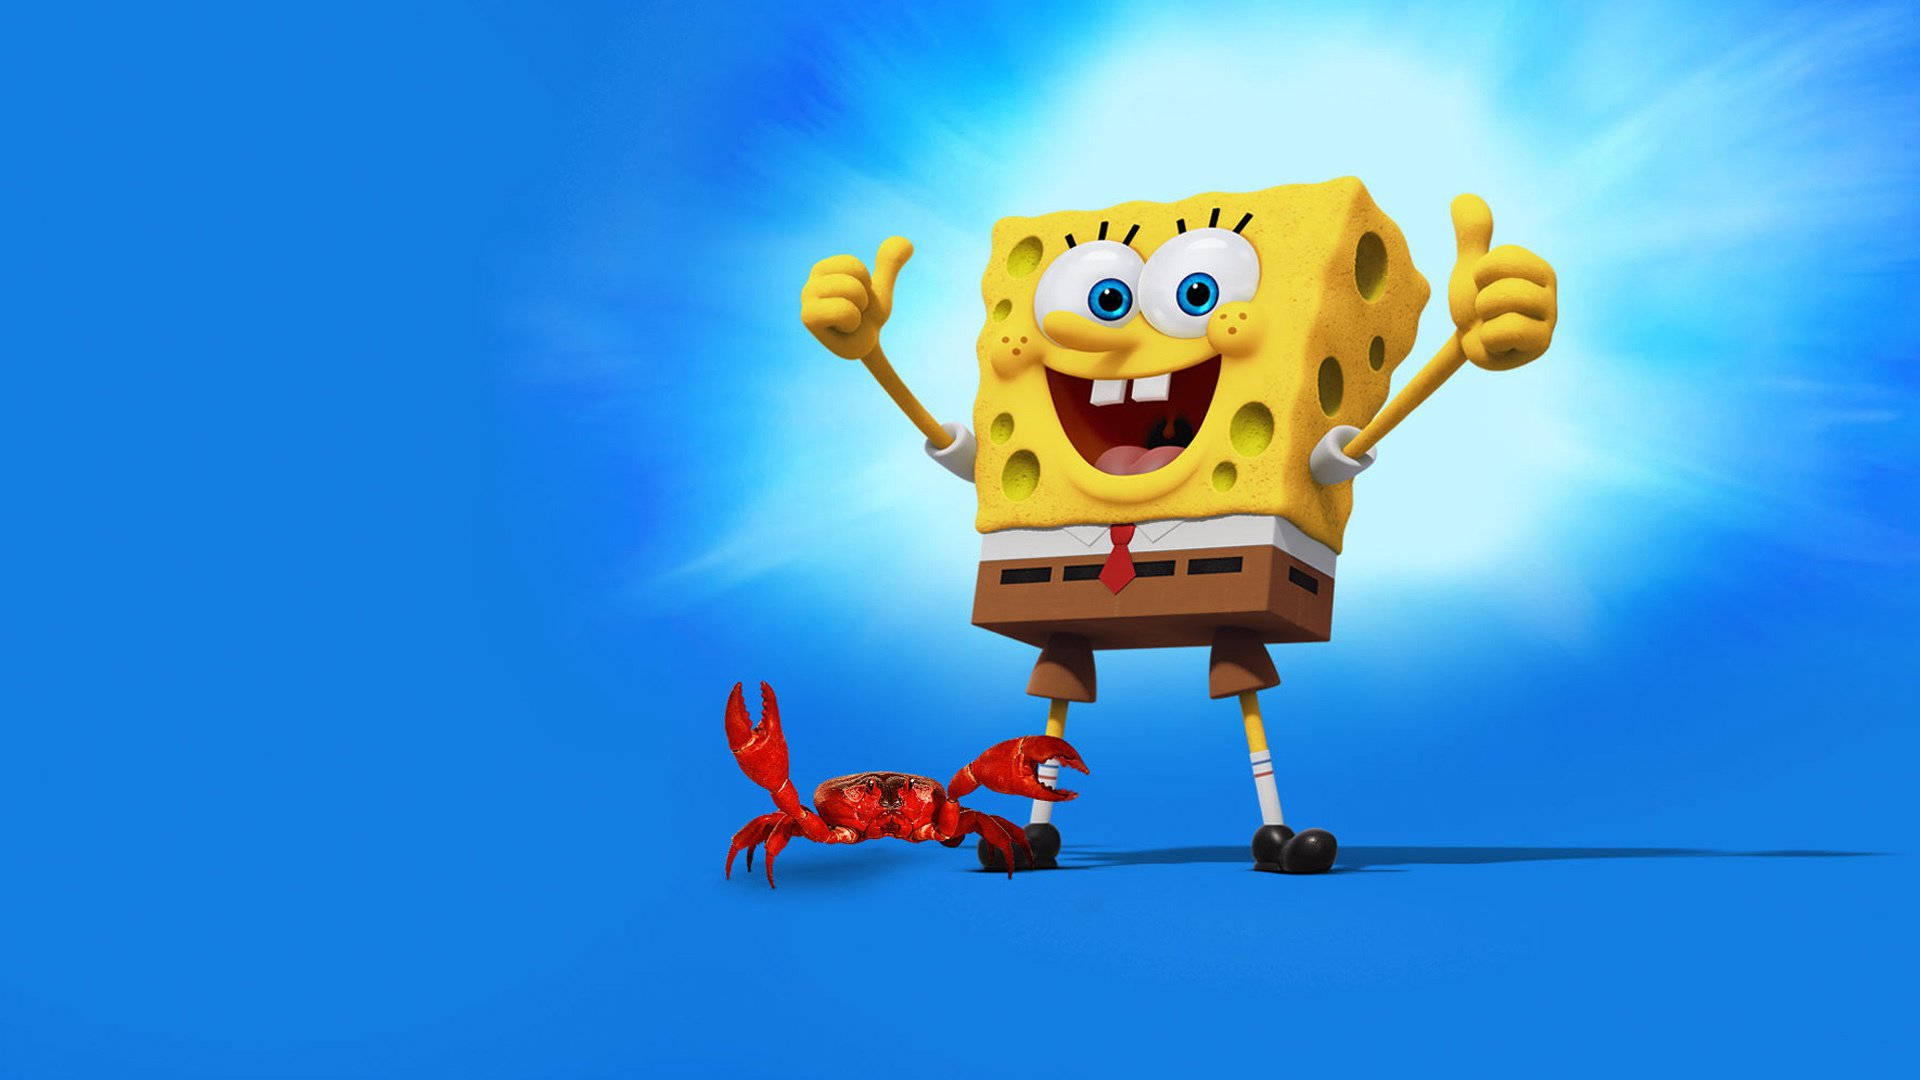 Funny Spongebob Giving A Thumbs Up Wallpaper